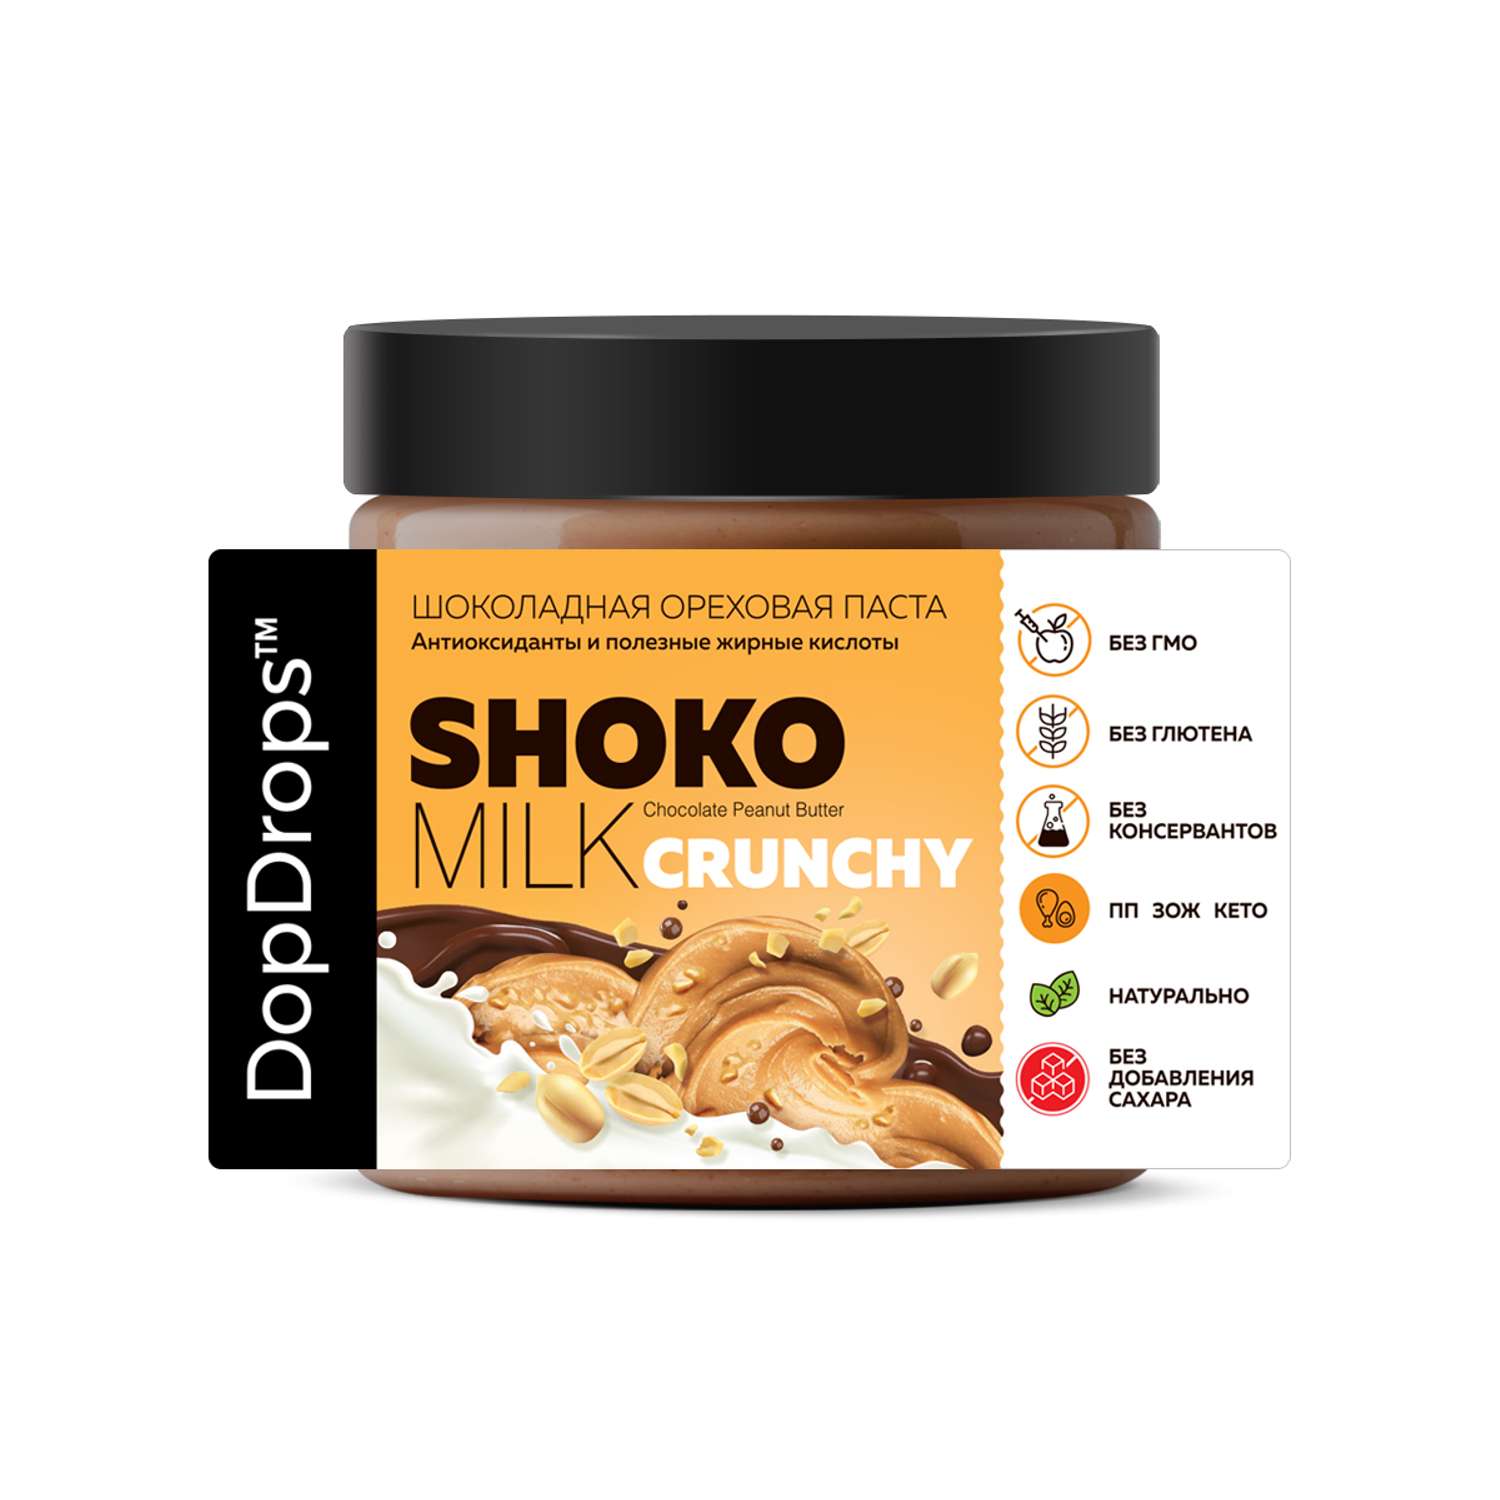 Паста ореховая DopDrops шоколадная без сахара арахисовая кранчи с кусочками SHOKO MILK 500 г - фото 4